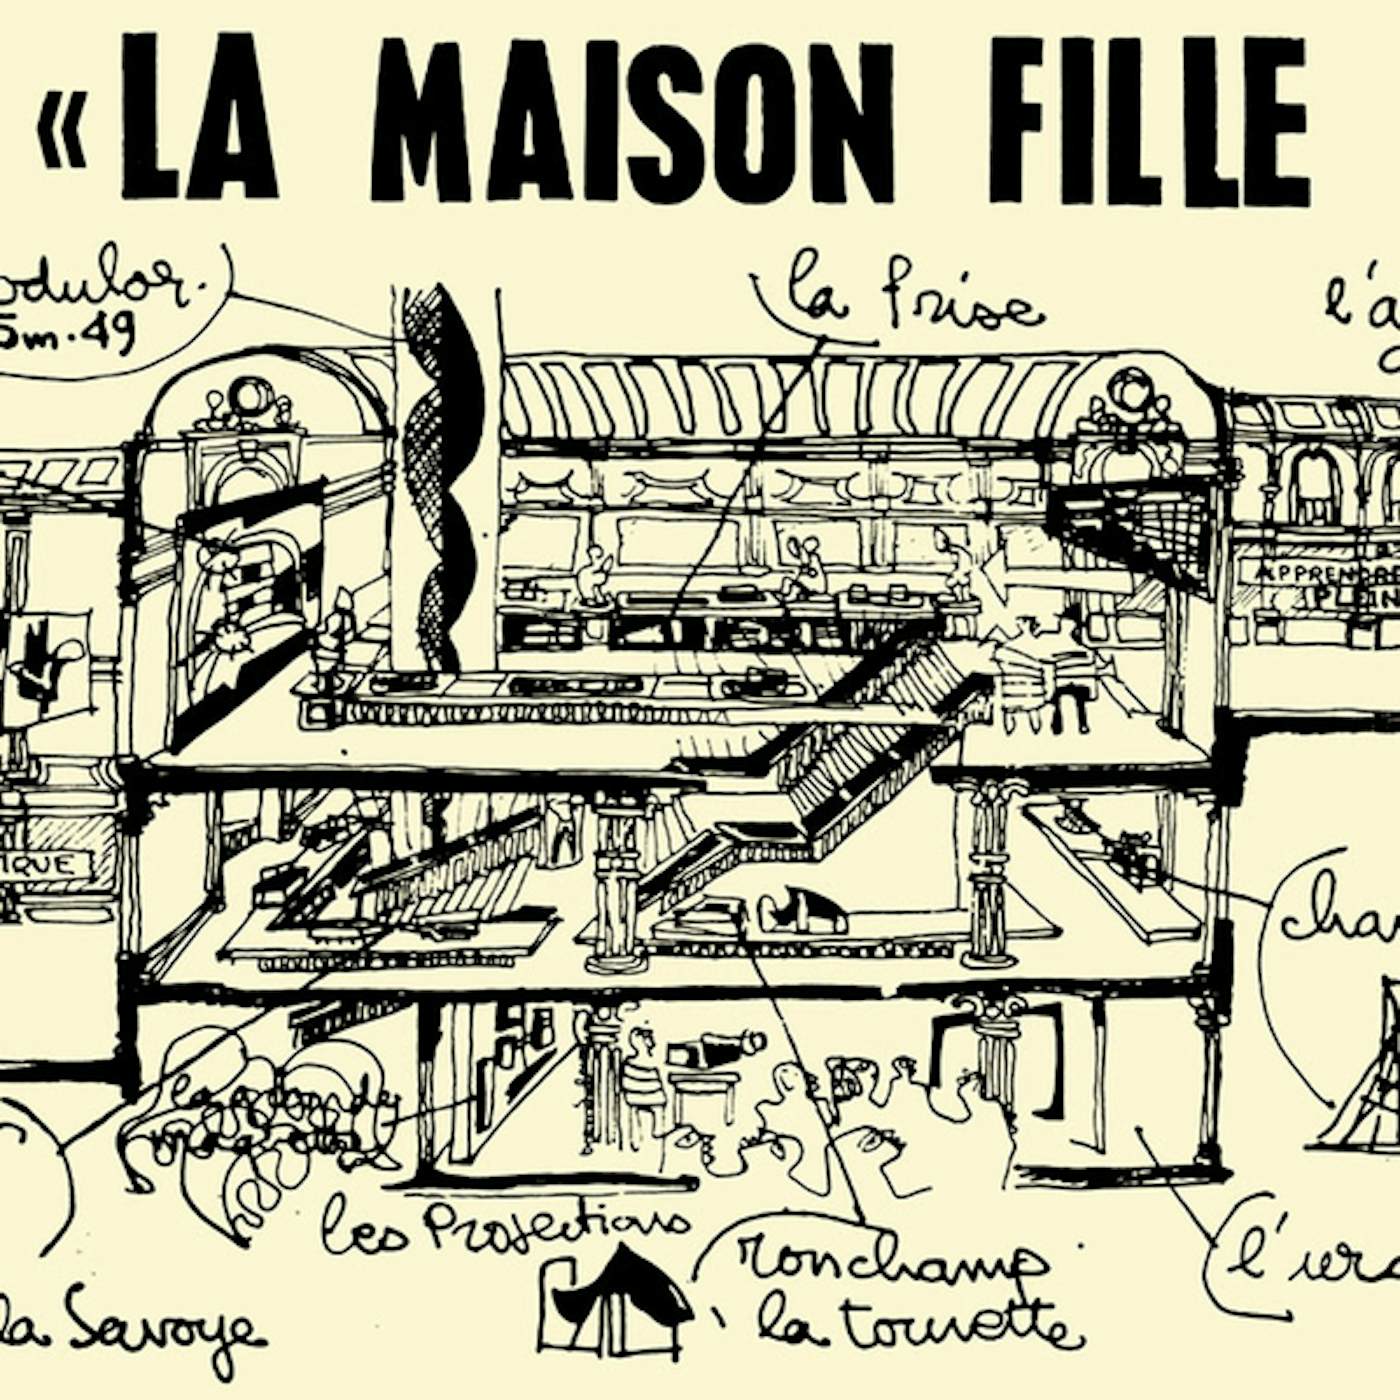 François Tusques La Maison Fille Du Soleil Vinyl Record